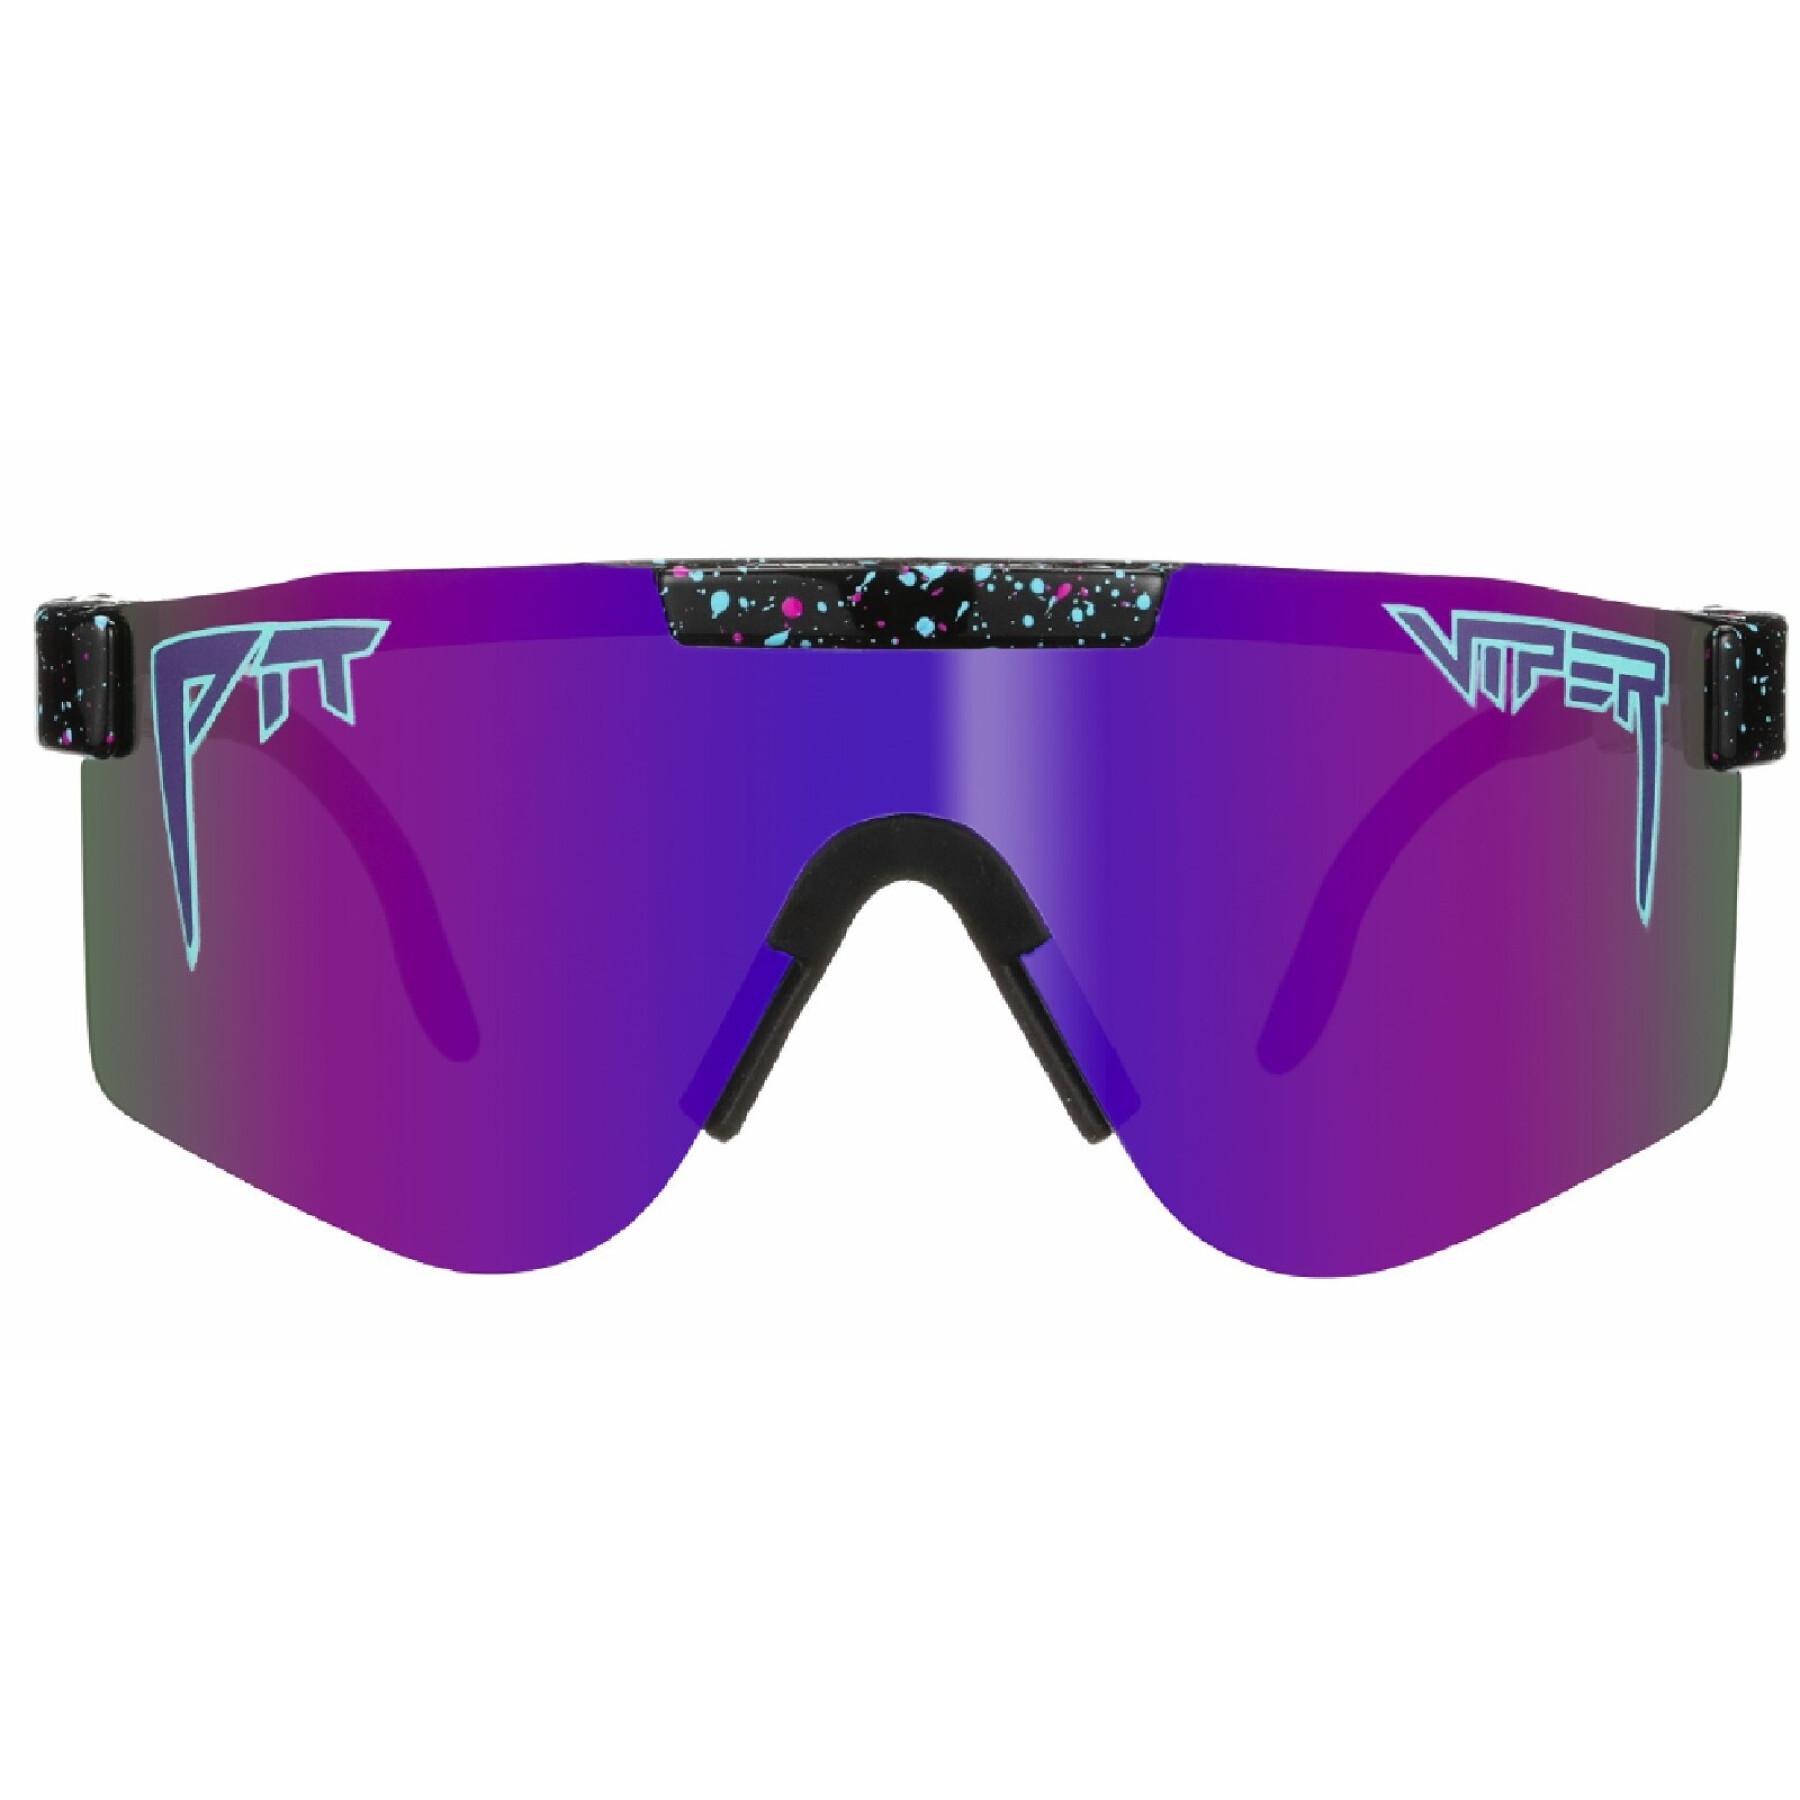 Polarisierte Sonnenbrille mit doppelter Breite Pit Viper The Night Fall Originals